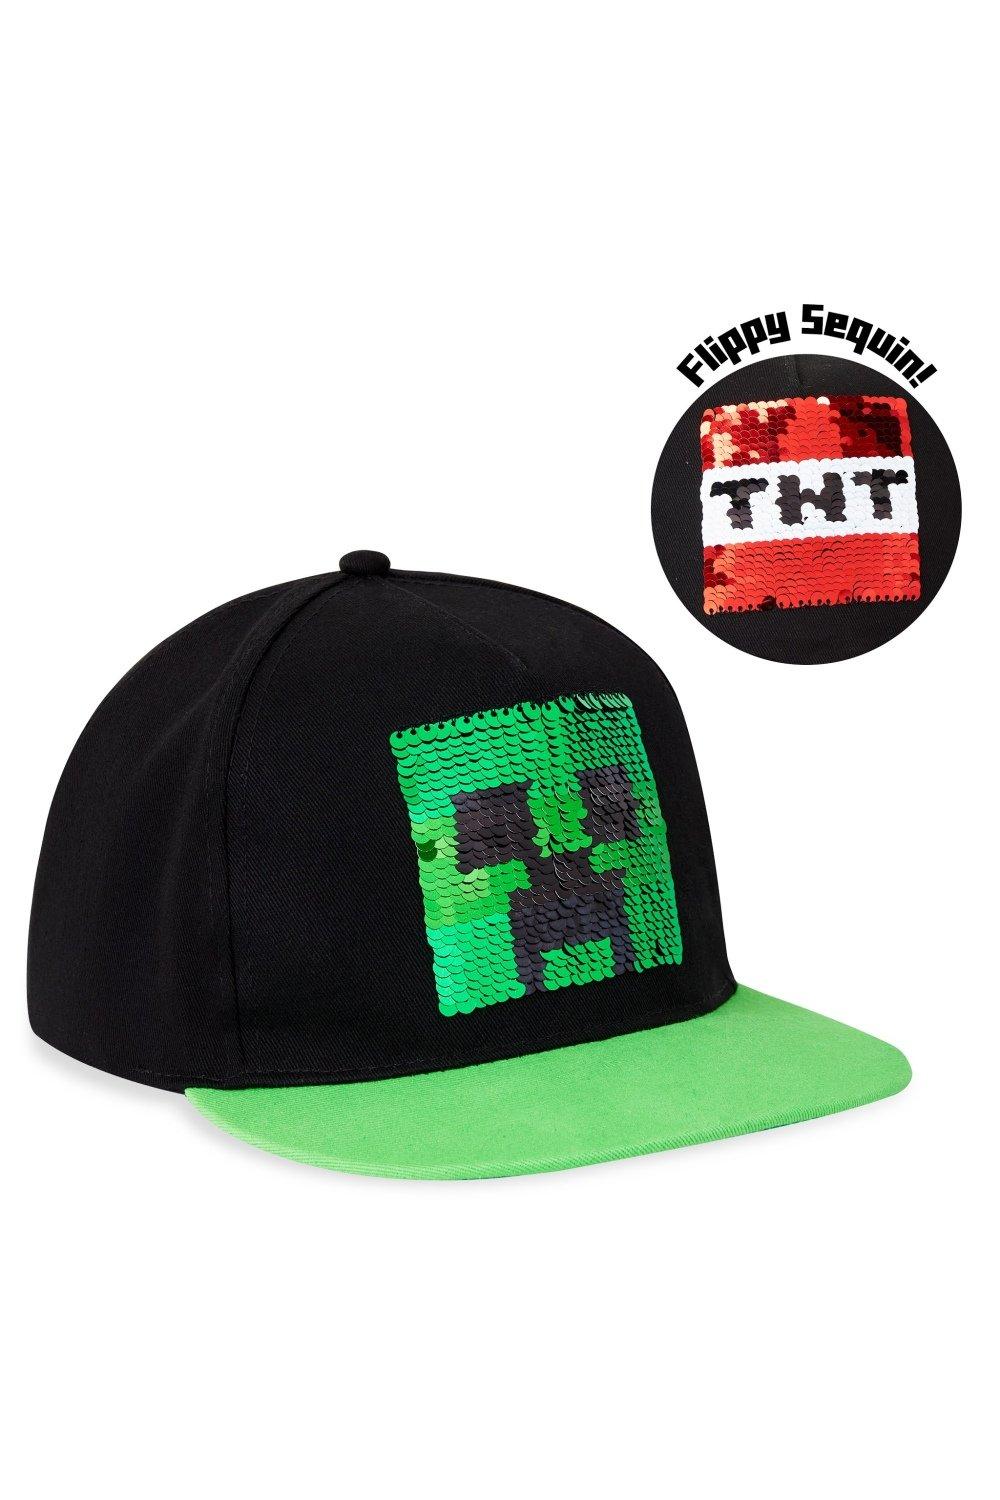 Двусторонняя кепка с пайетками, зеленая Minecraft, мультиколор дамская бейсбольная кепка с пуговицами сзади летняя солнцезащитная кепка модная дышащая кепка повседневная мужская бейсбольная кепка